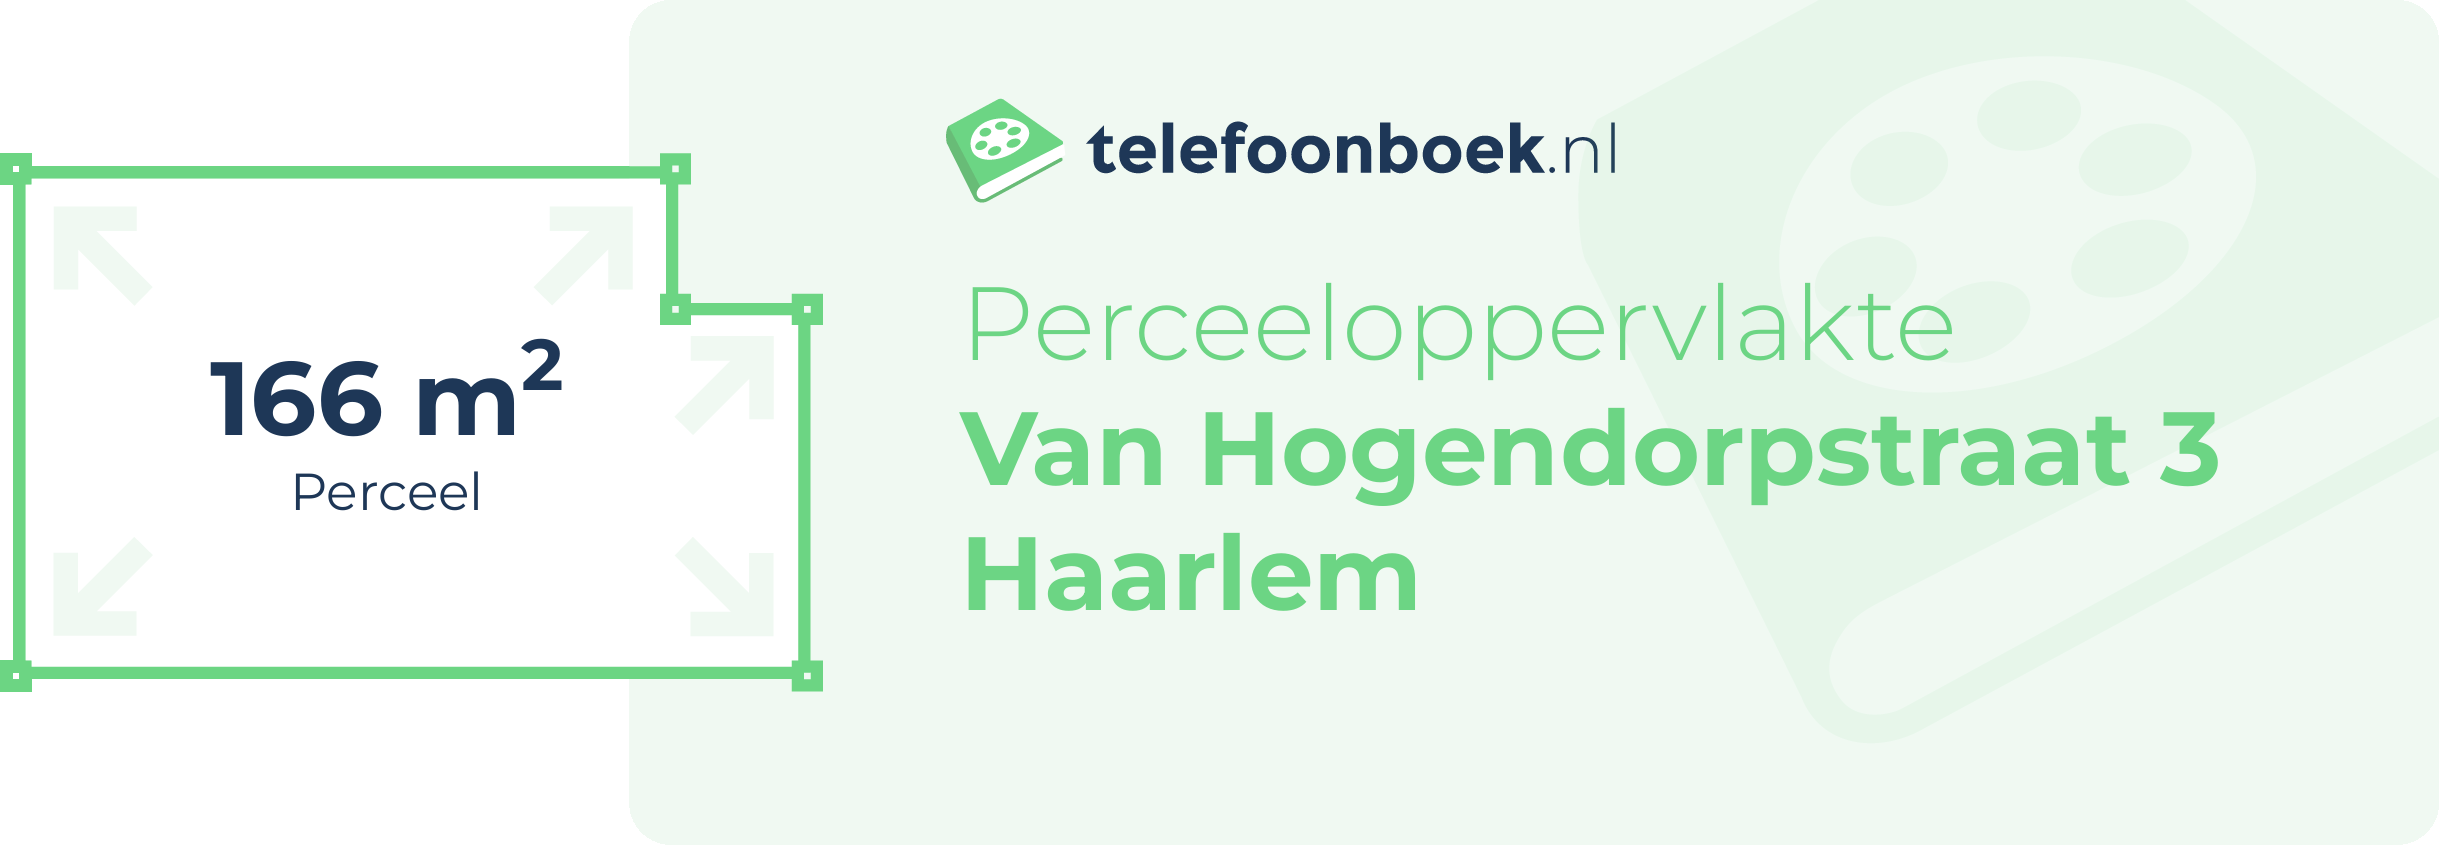 Perceeloppervlakte Van Hogendorpstraat 3 Haarlem